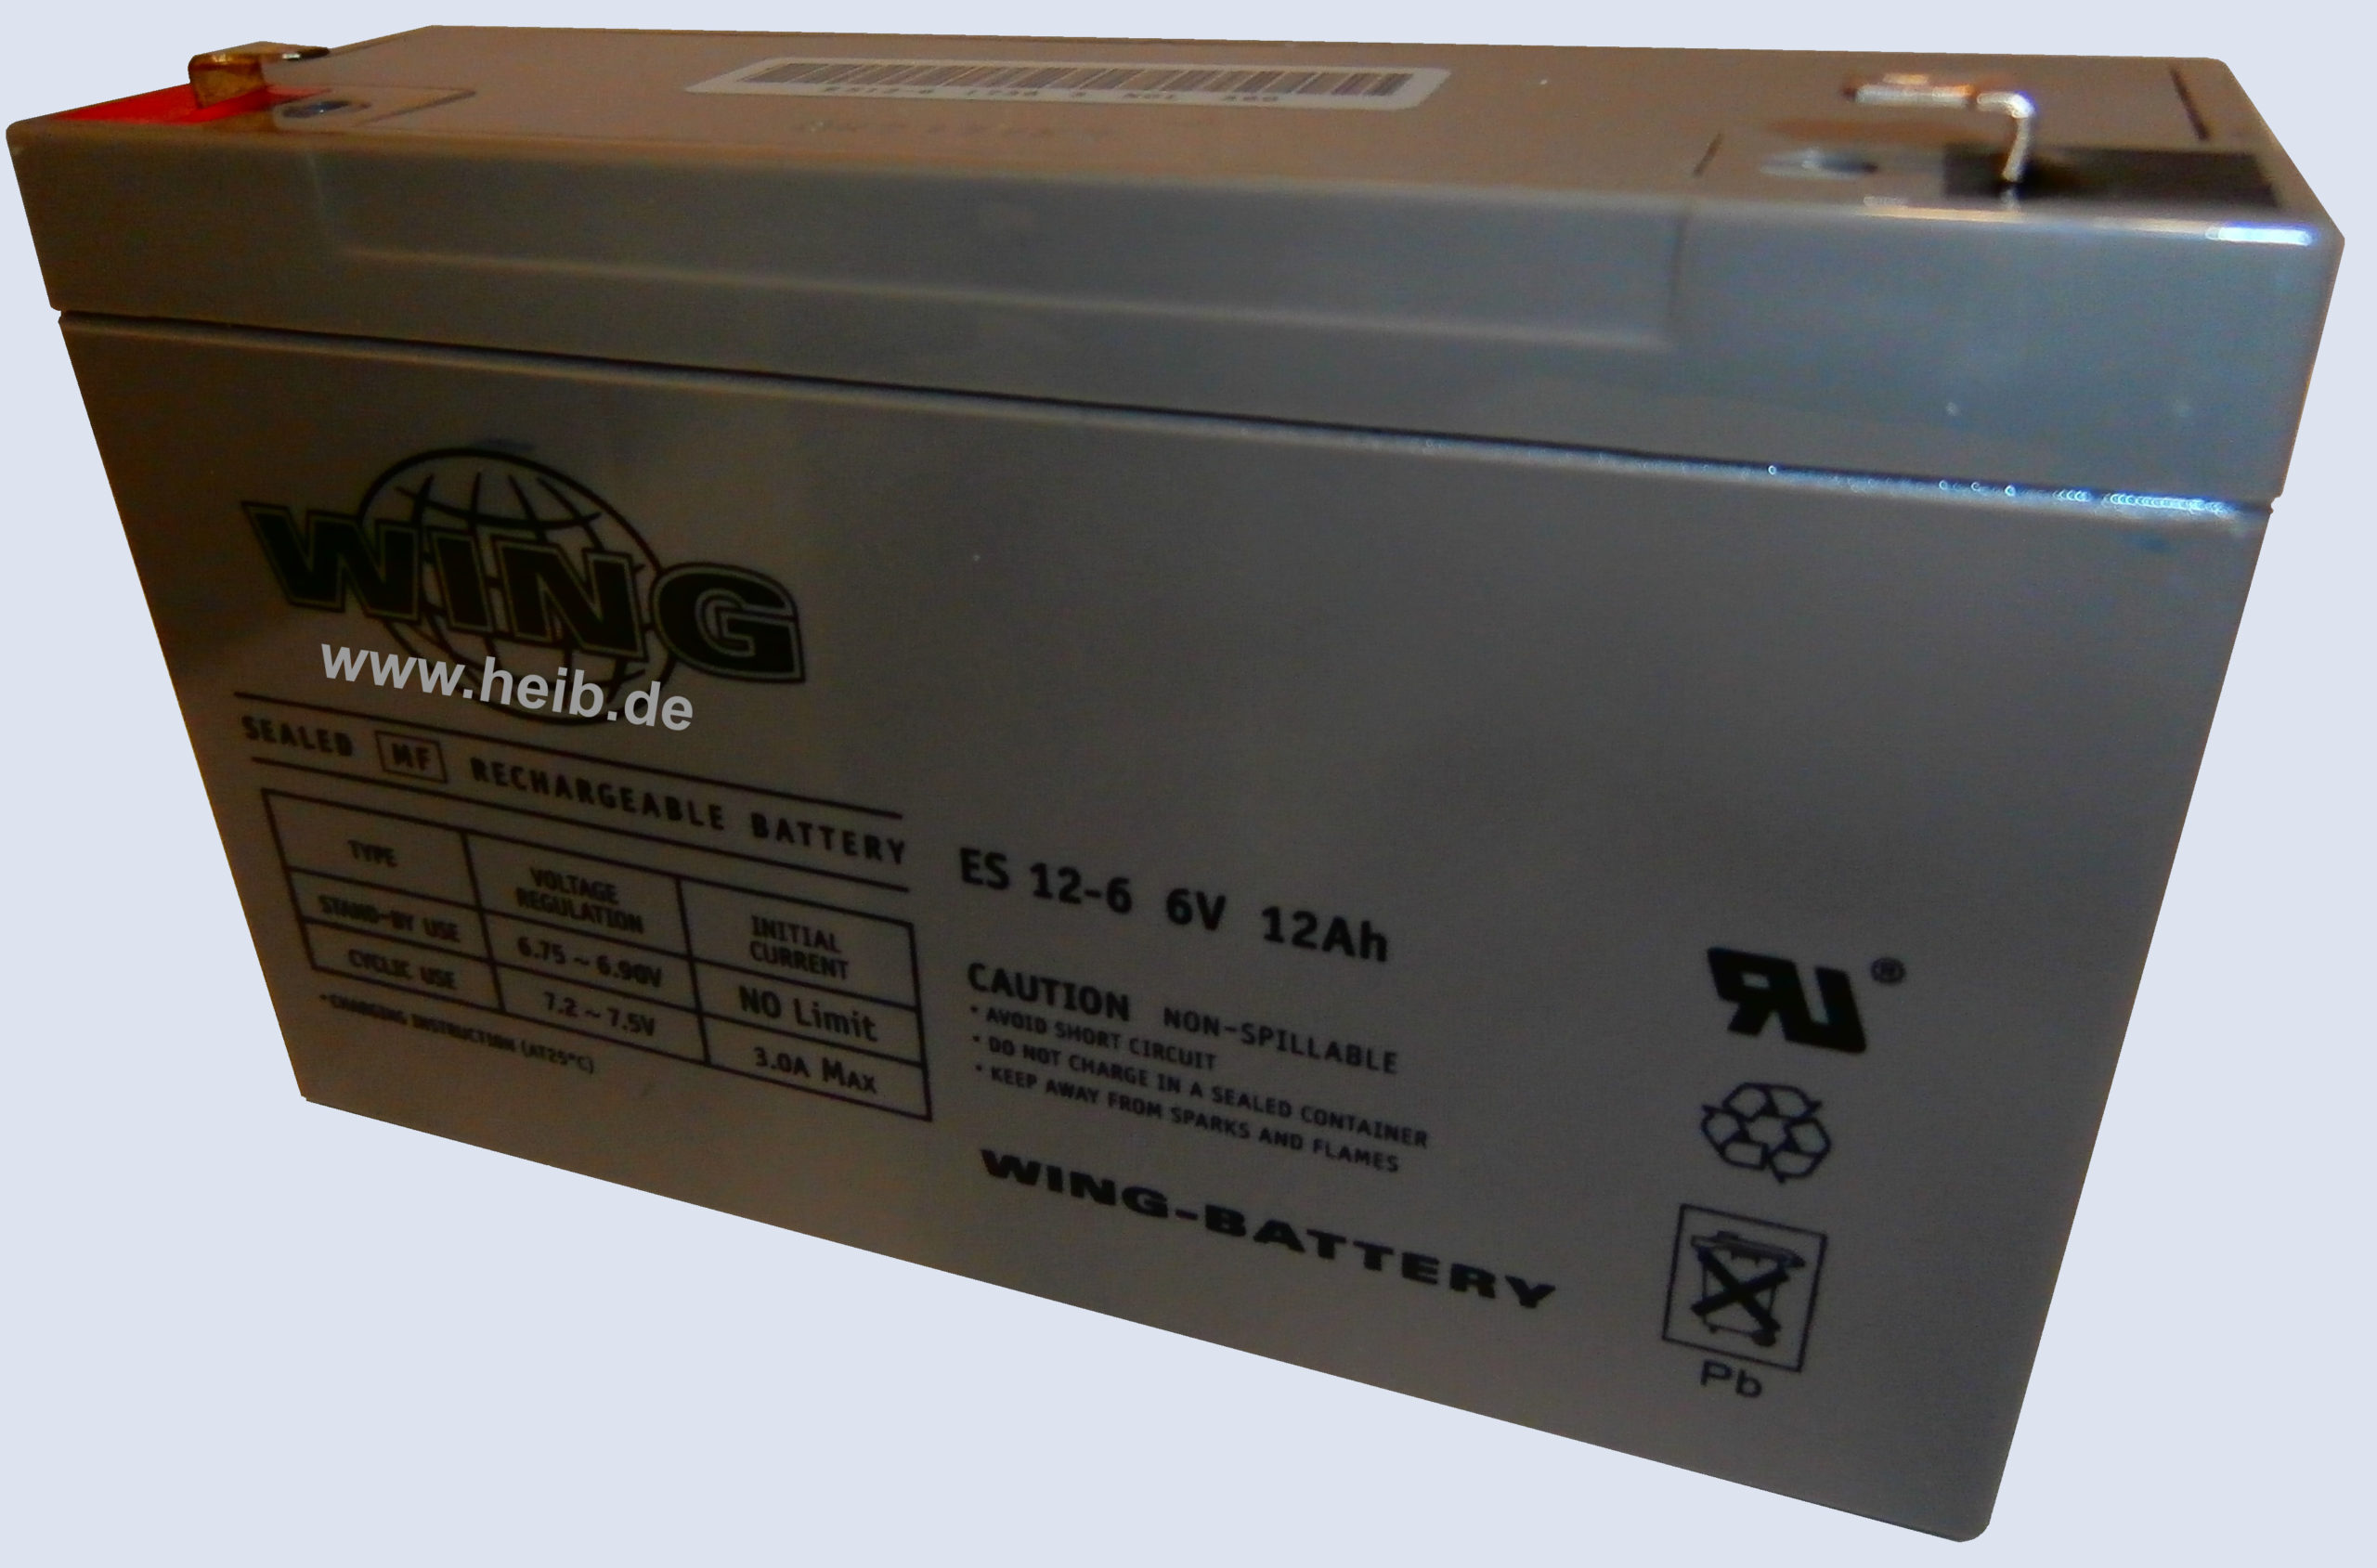 Wing - Wartungsfreie Bleibatterie ES 12-6